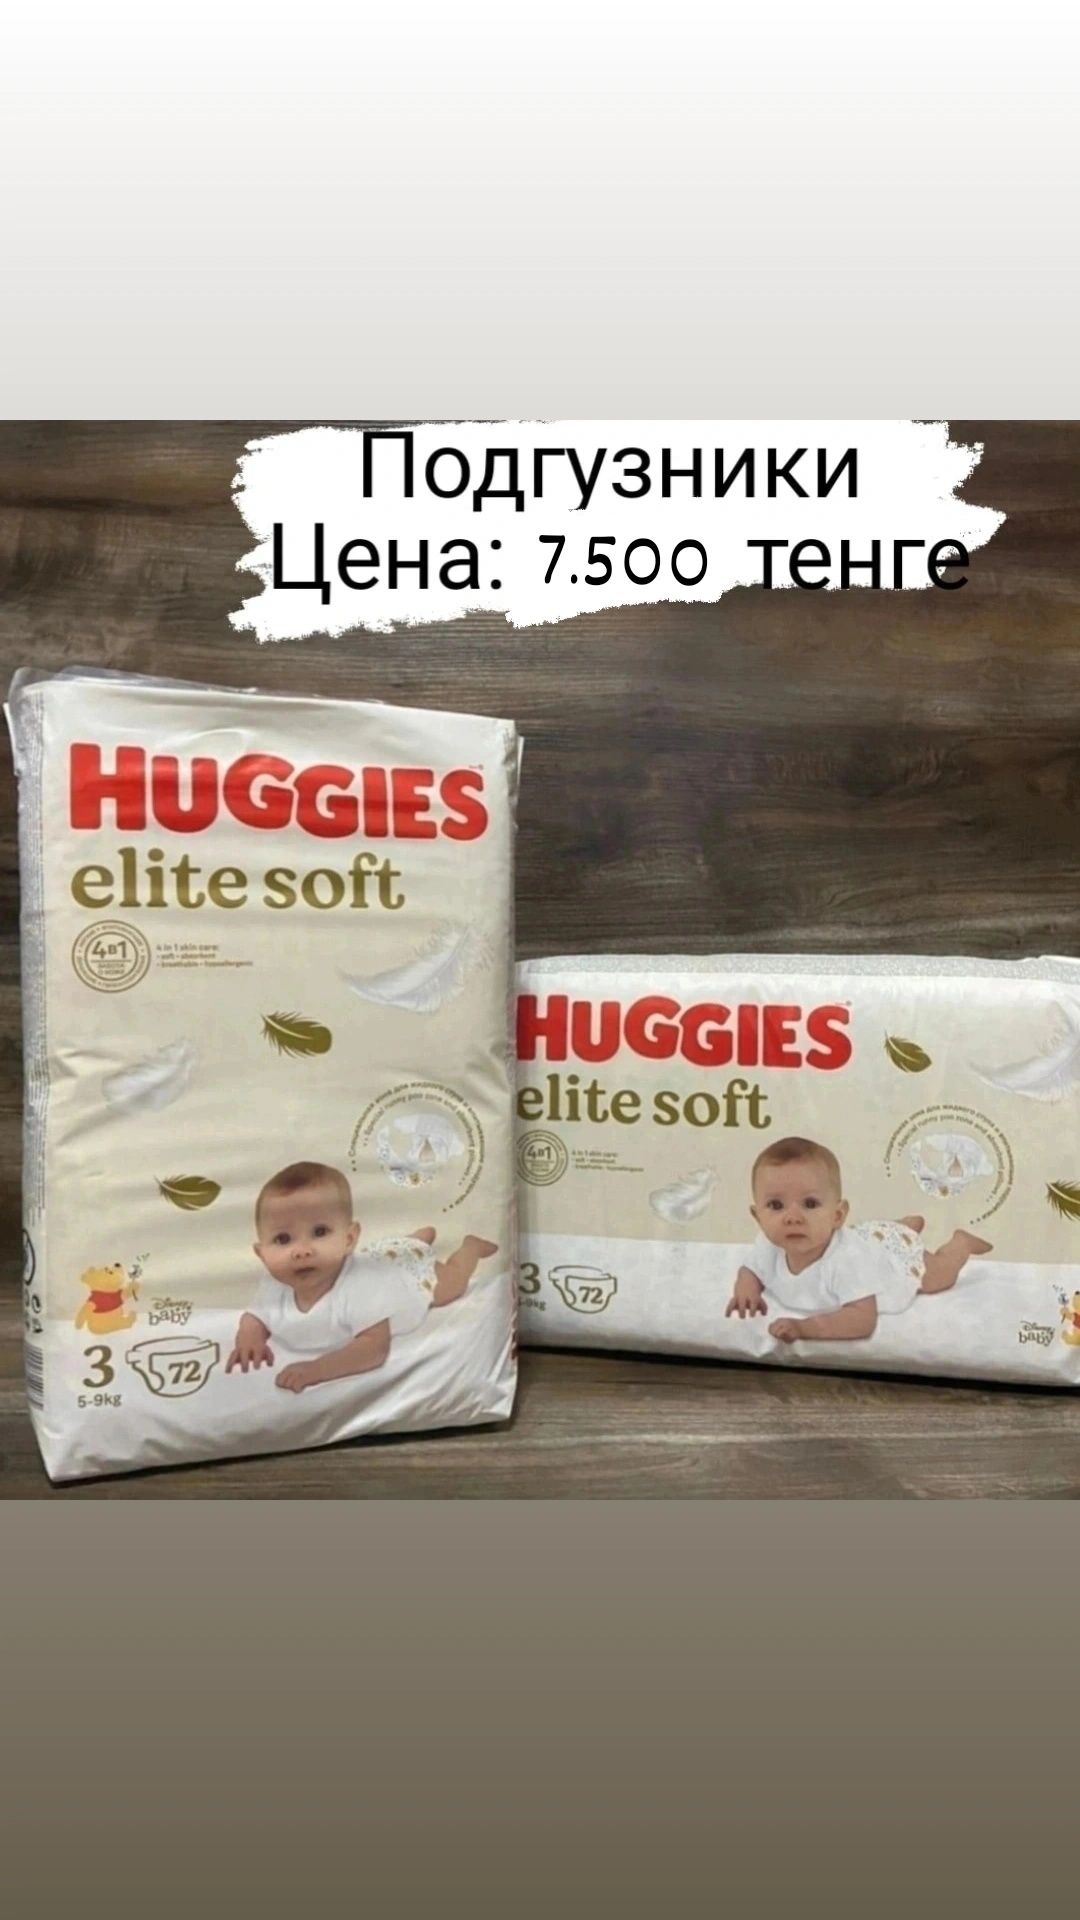 Хагис Elite soft (памперсы)